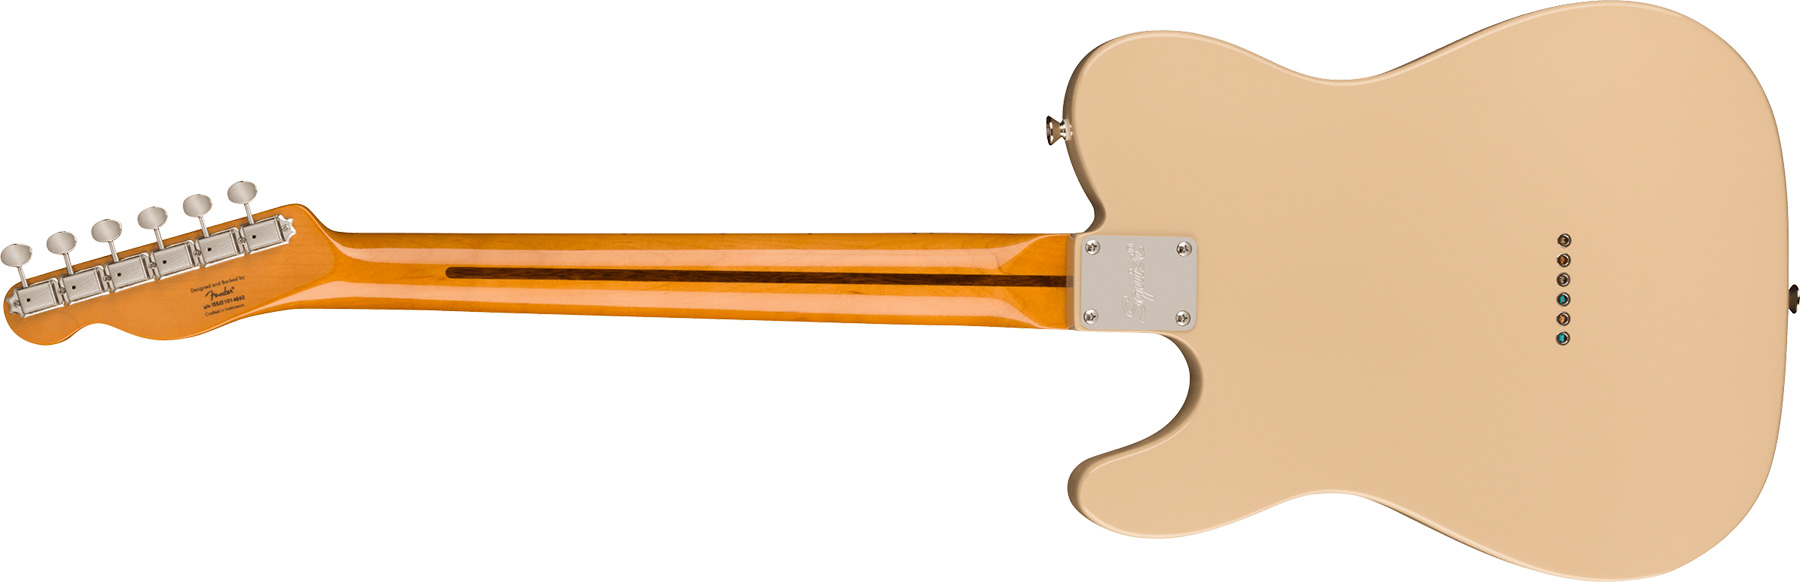 Squier Tele '60s Thinline Gold Anodized Pickguard Classic Vibe Fsr 2s Ht Mn - Desert Sand - Guitarra eléctrica con forma de tel - Variation 1